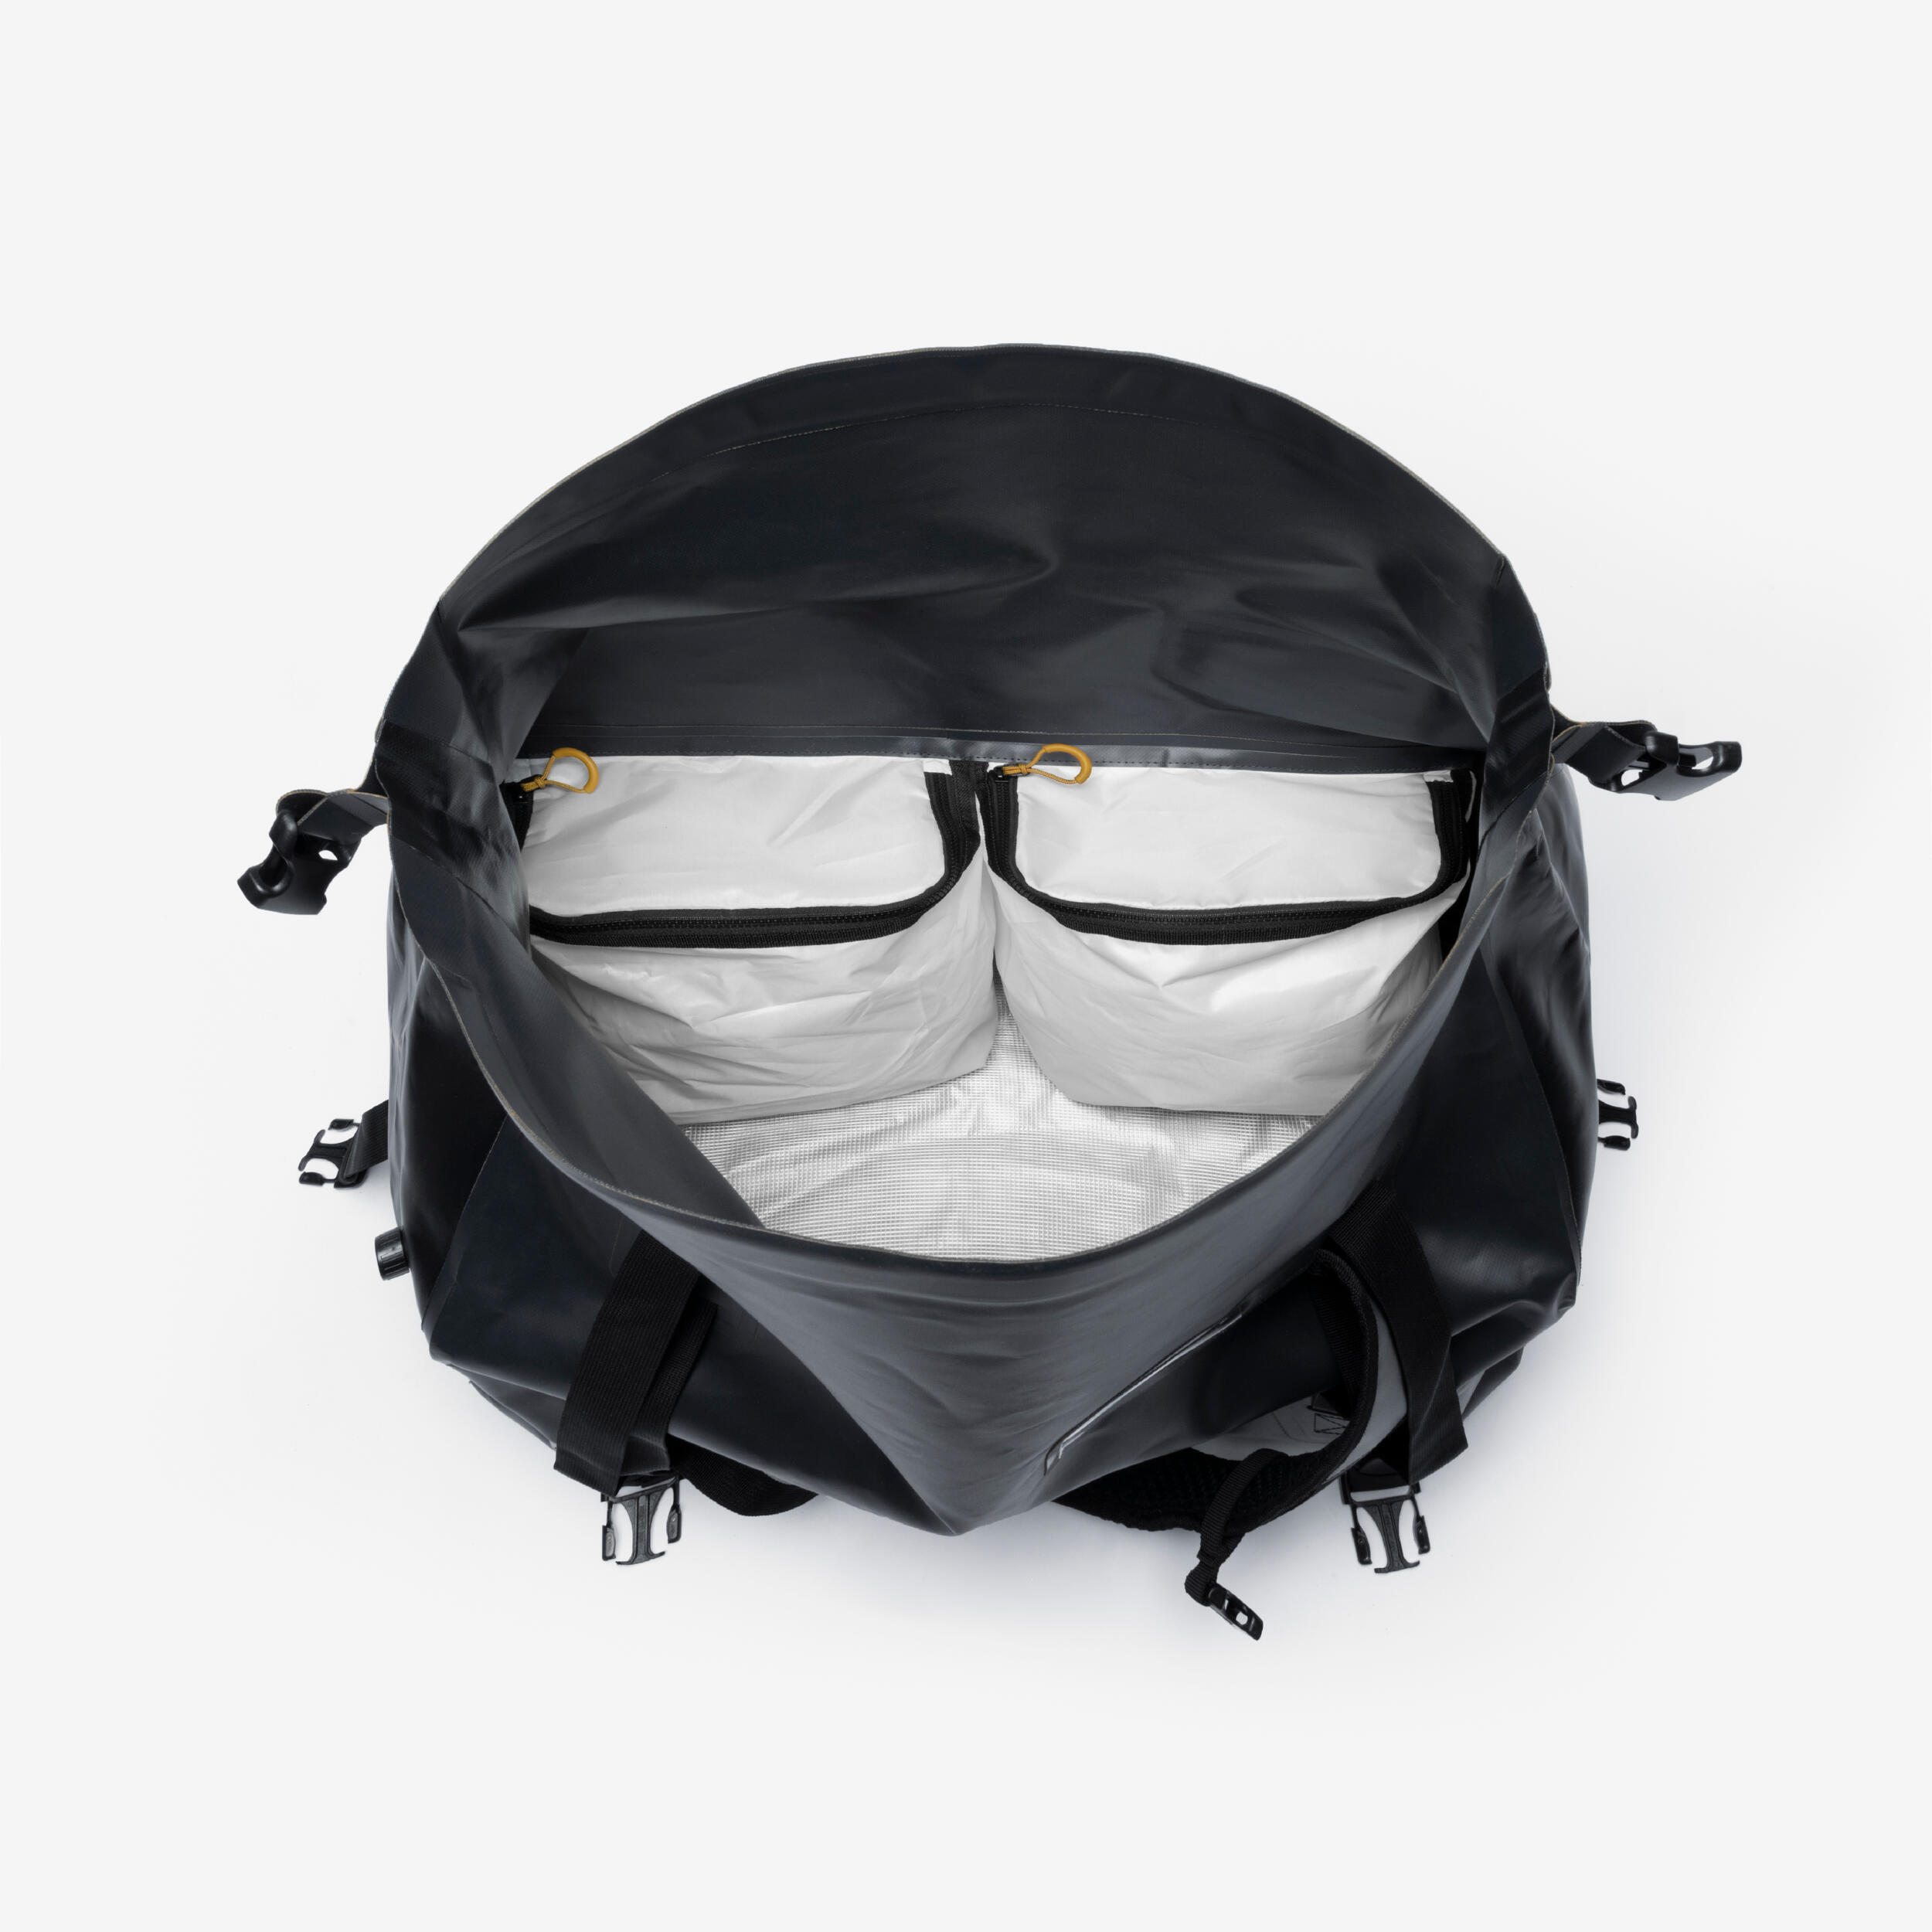 Waterproof duffle bag - 80 L travel bag Anthracite black 6/16